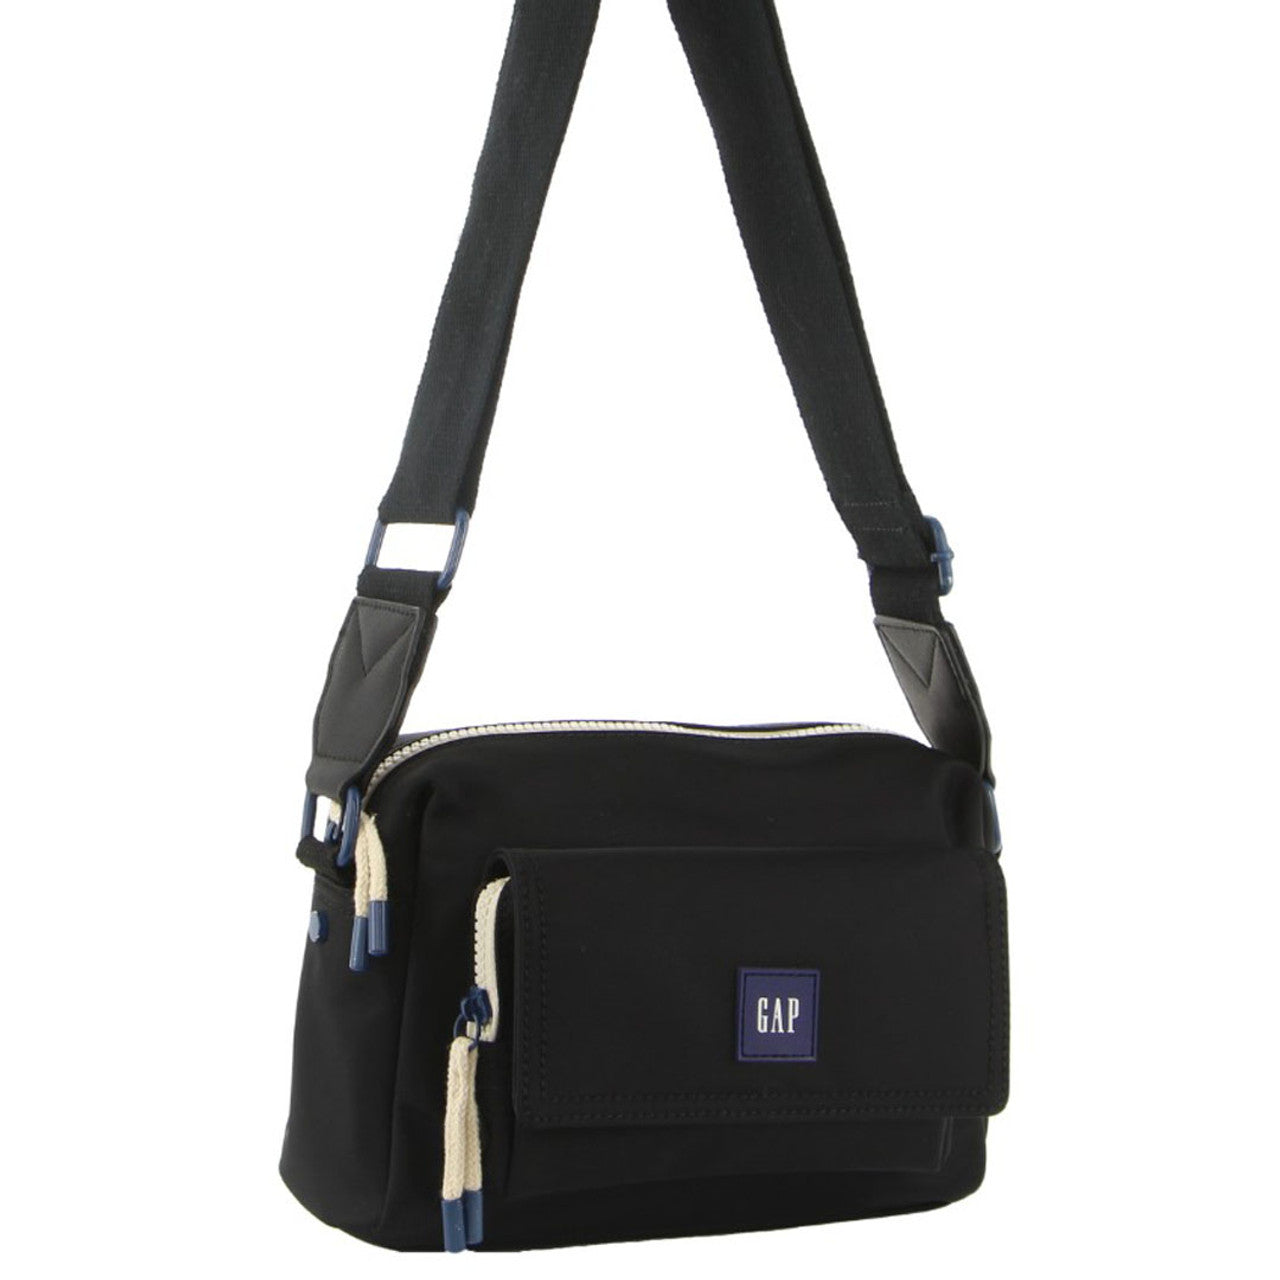 GAP - 10 Nylon shoulder bag front pocket - Black